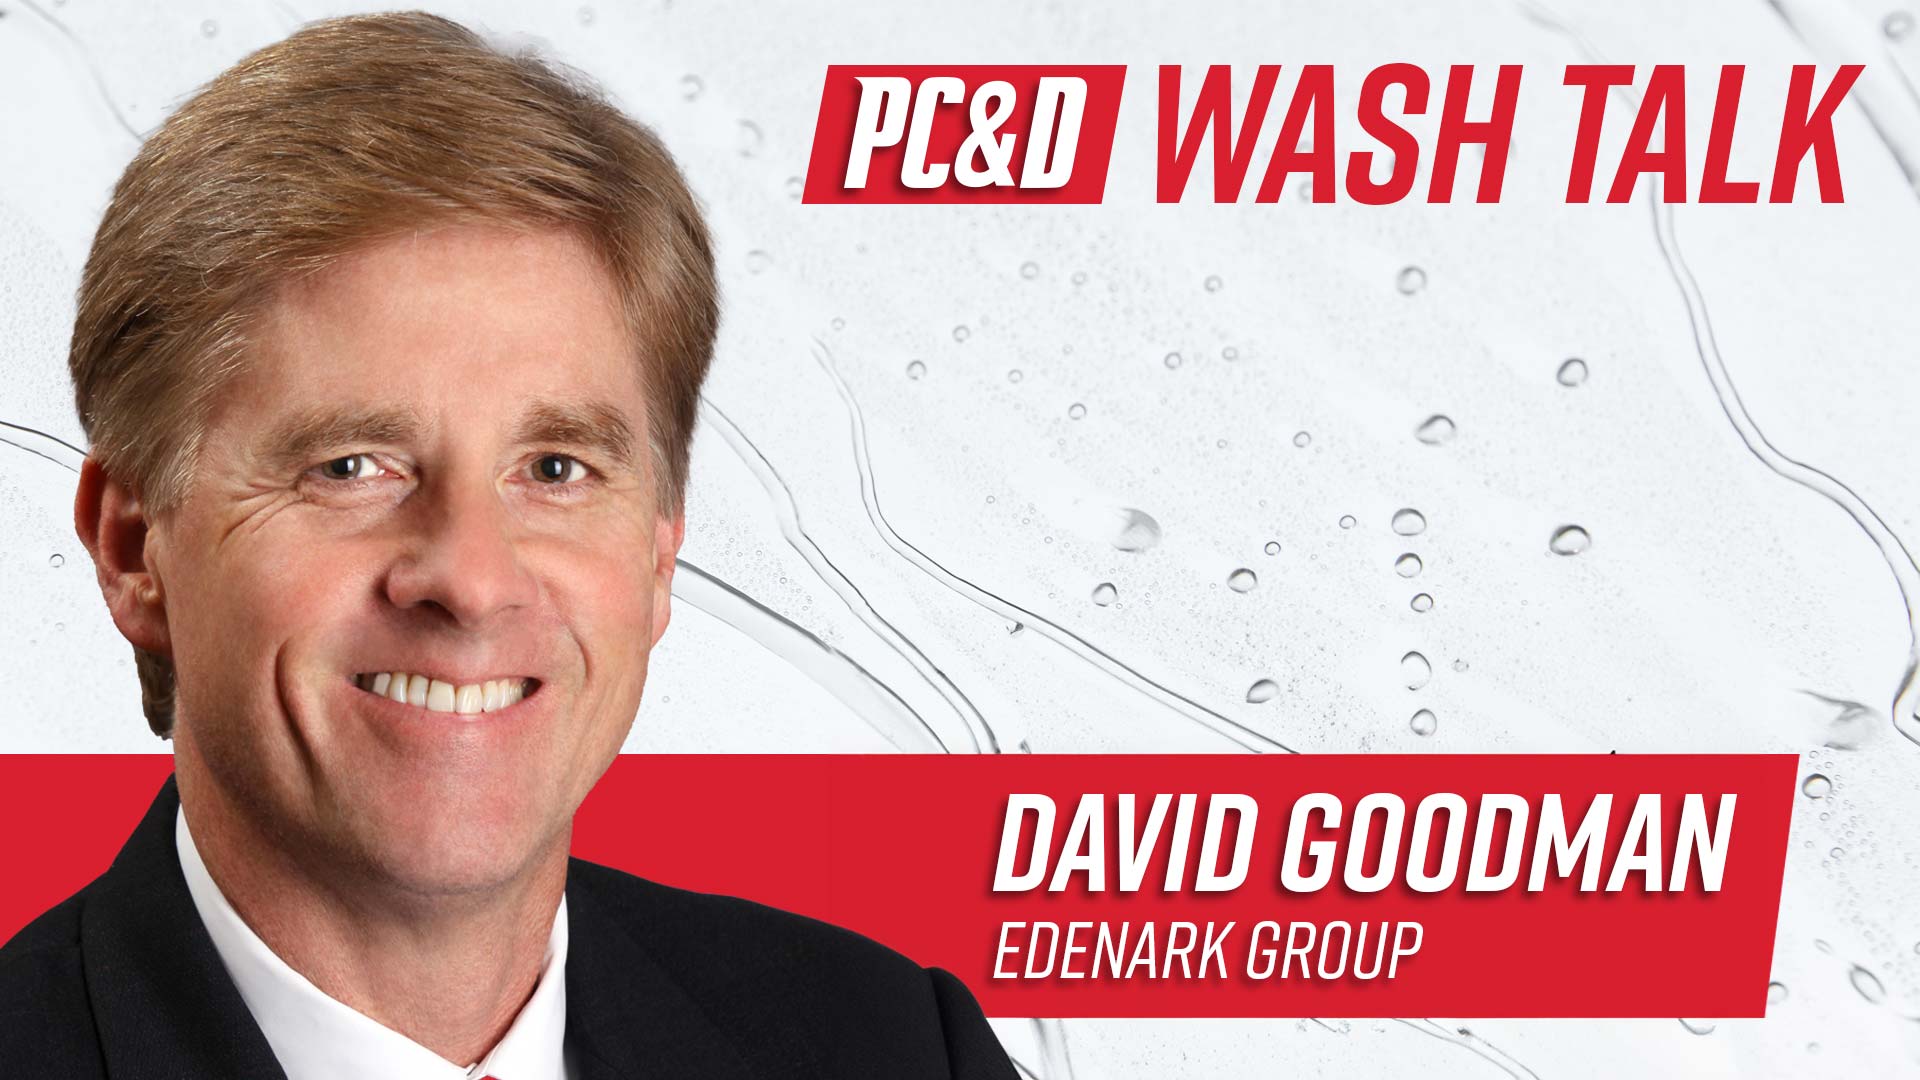 David Goodman, CEO of Edenark Group